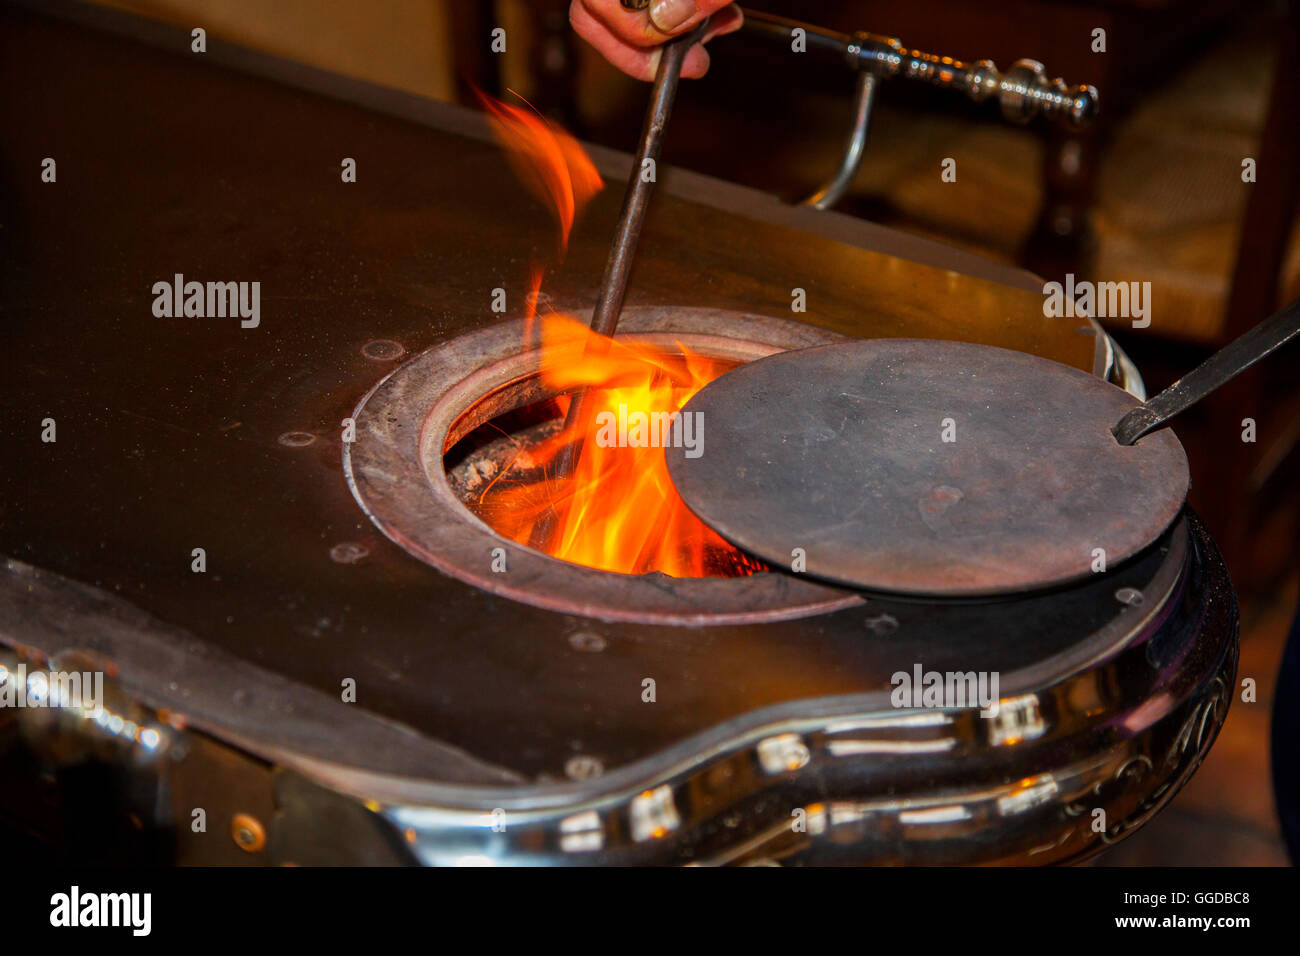 Vintage de hierro fundido estufa de carbón / Leuvense stoof mostrando las llamas y poker Foto de stock